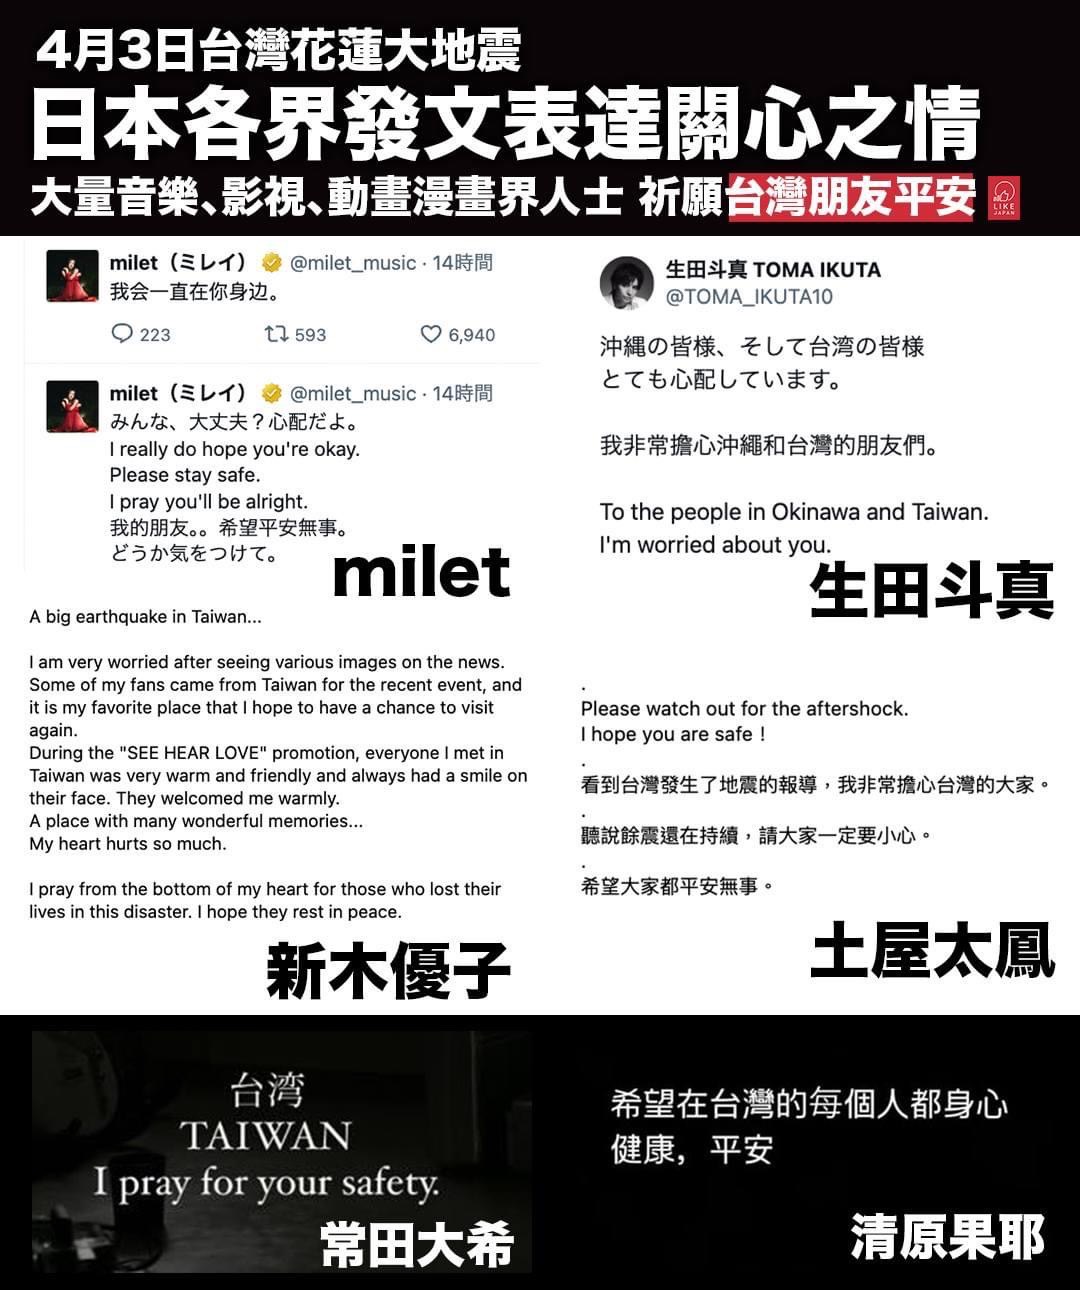 日本藝人傳達對台灣的關係與祝福之意。圖/取自喜愛日本LikeJapan臉書